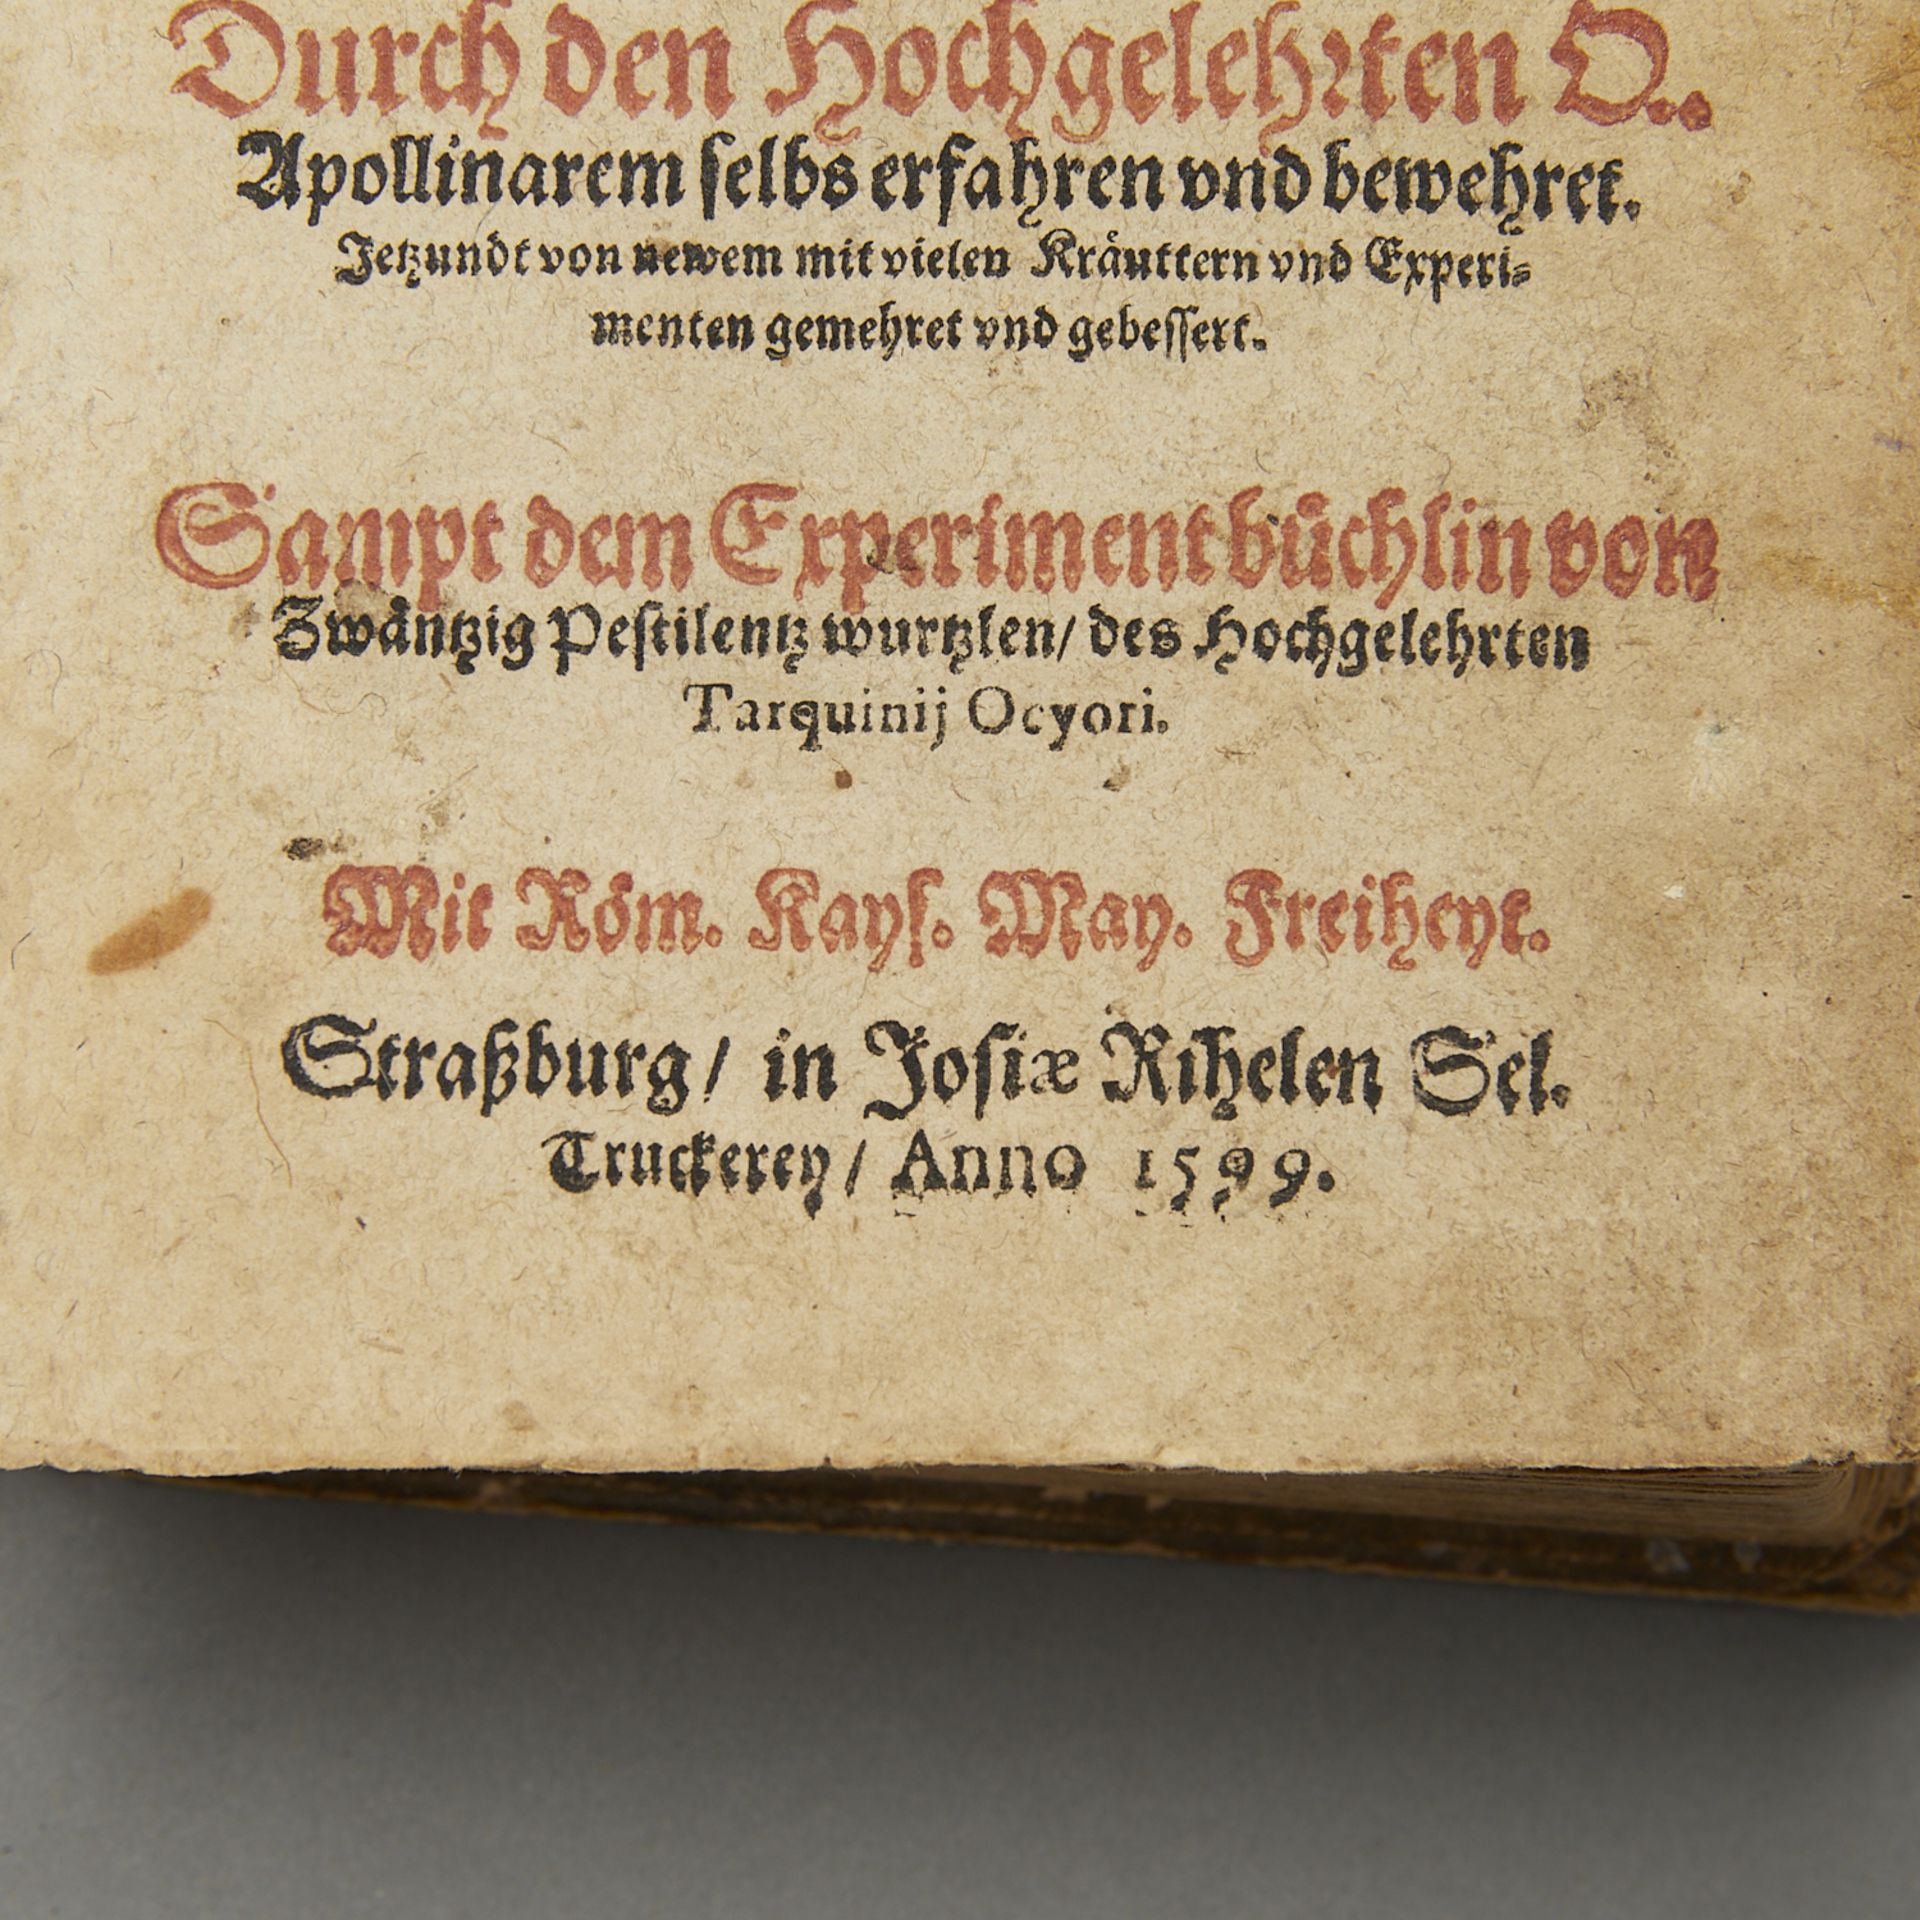 Ryff "Kurtzes Handtbuchlein und Experiment" 1599 - Image 7 of 16